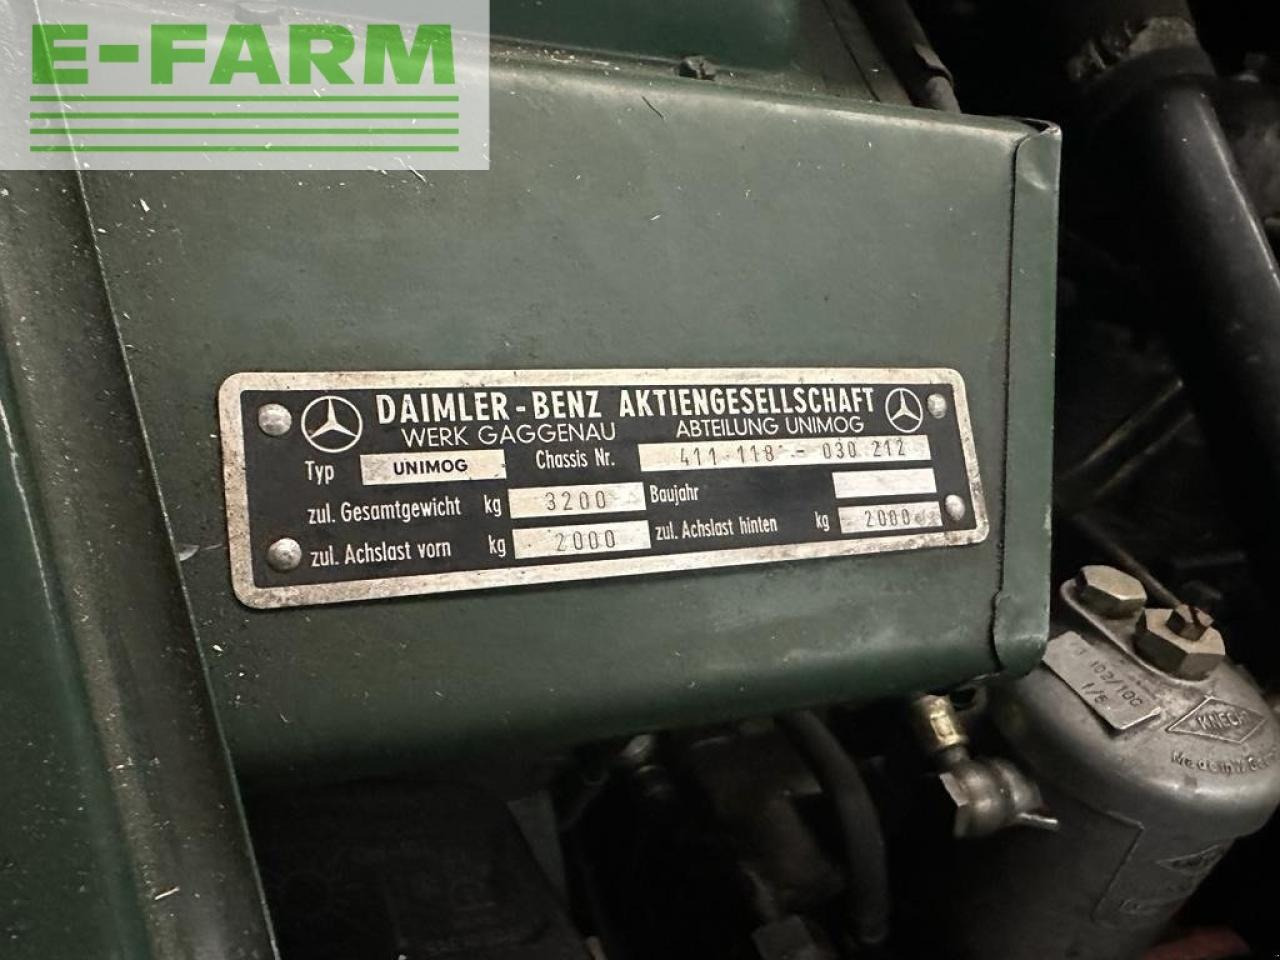 Farm tractor Mercedes-Benz u411 agrar heckhydraulik 2dw bj65: picture 10